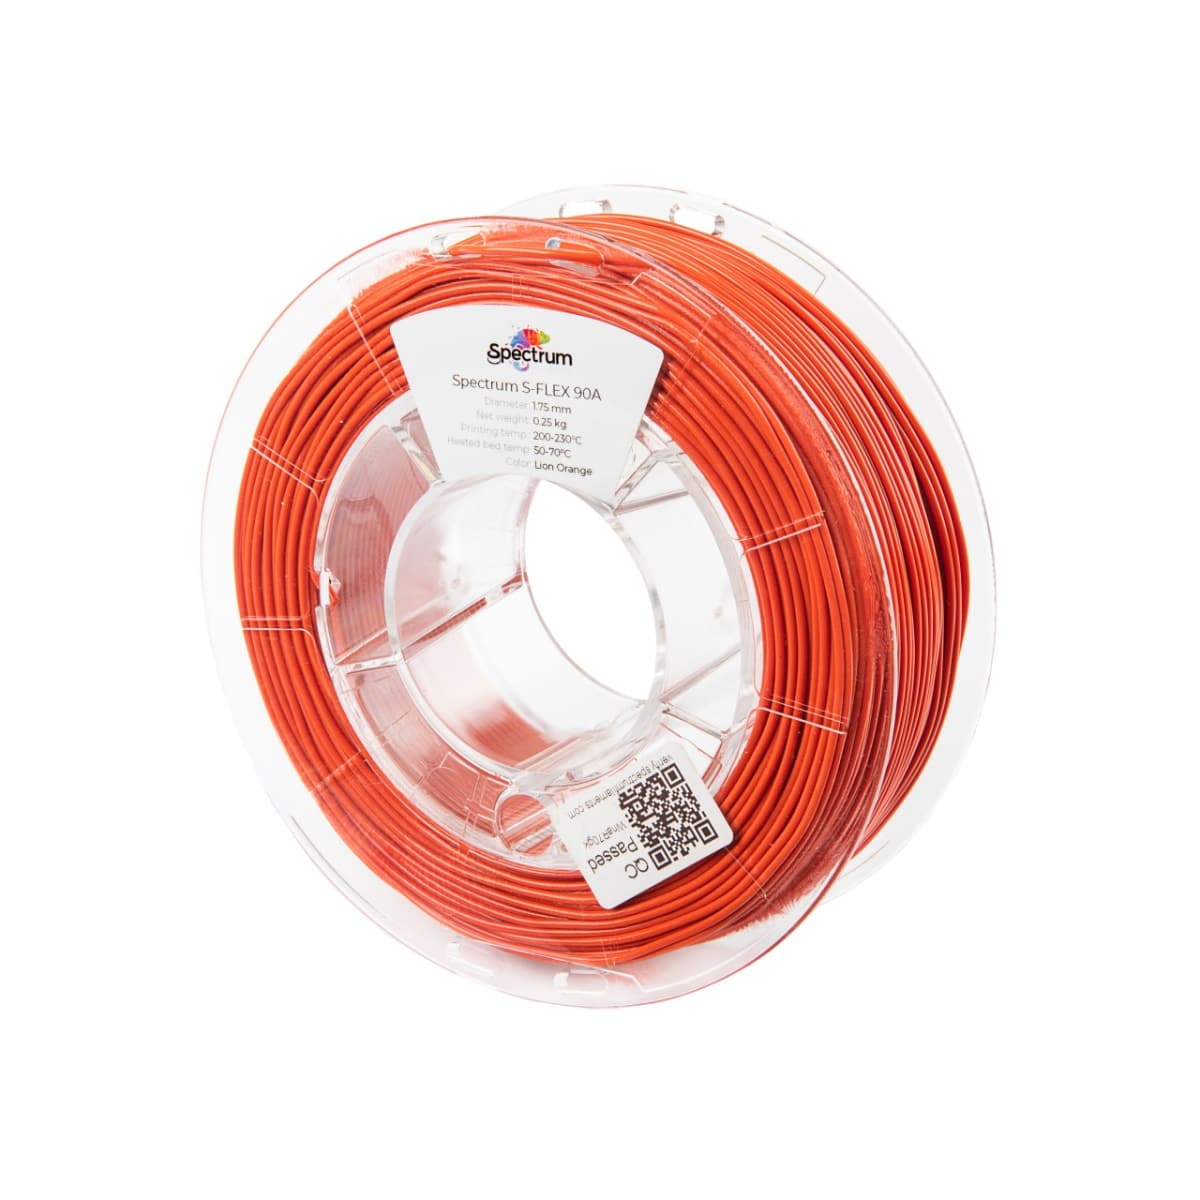 Køb Spectrum Filaments - S-Flex 90A - 1.75mm - Lion Orange - 0.25kg filament - Pris 140.00 kr.